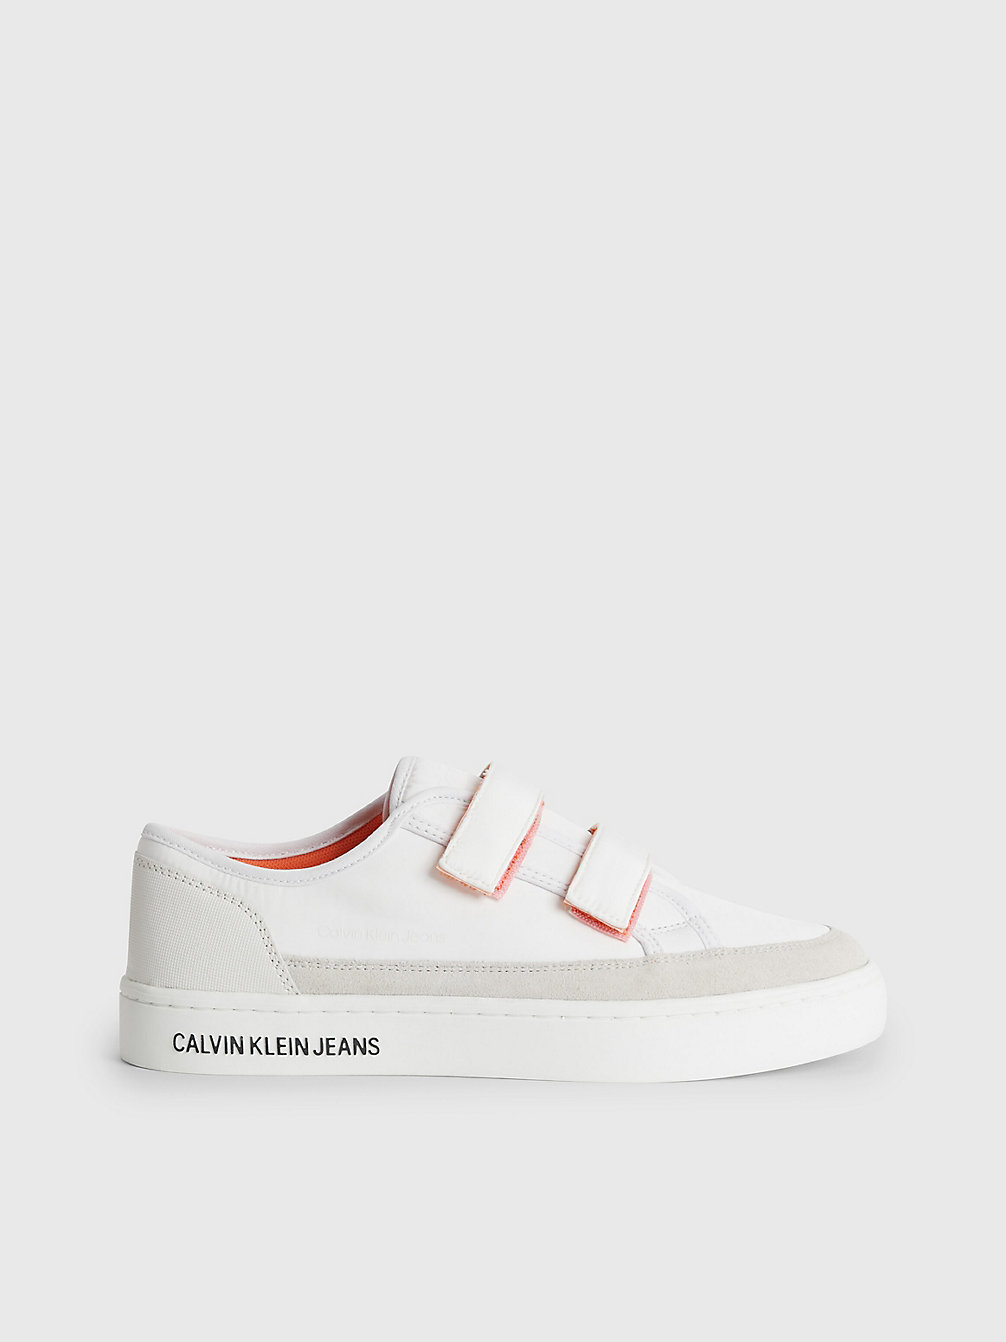 WHITE/CREAMY WHITE > Recycelte Sneakers Mit Klettverschluss > undefined Damen - Calvin Klein